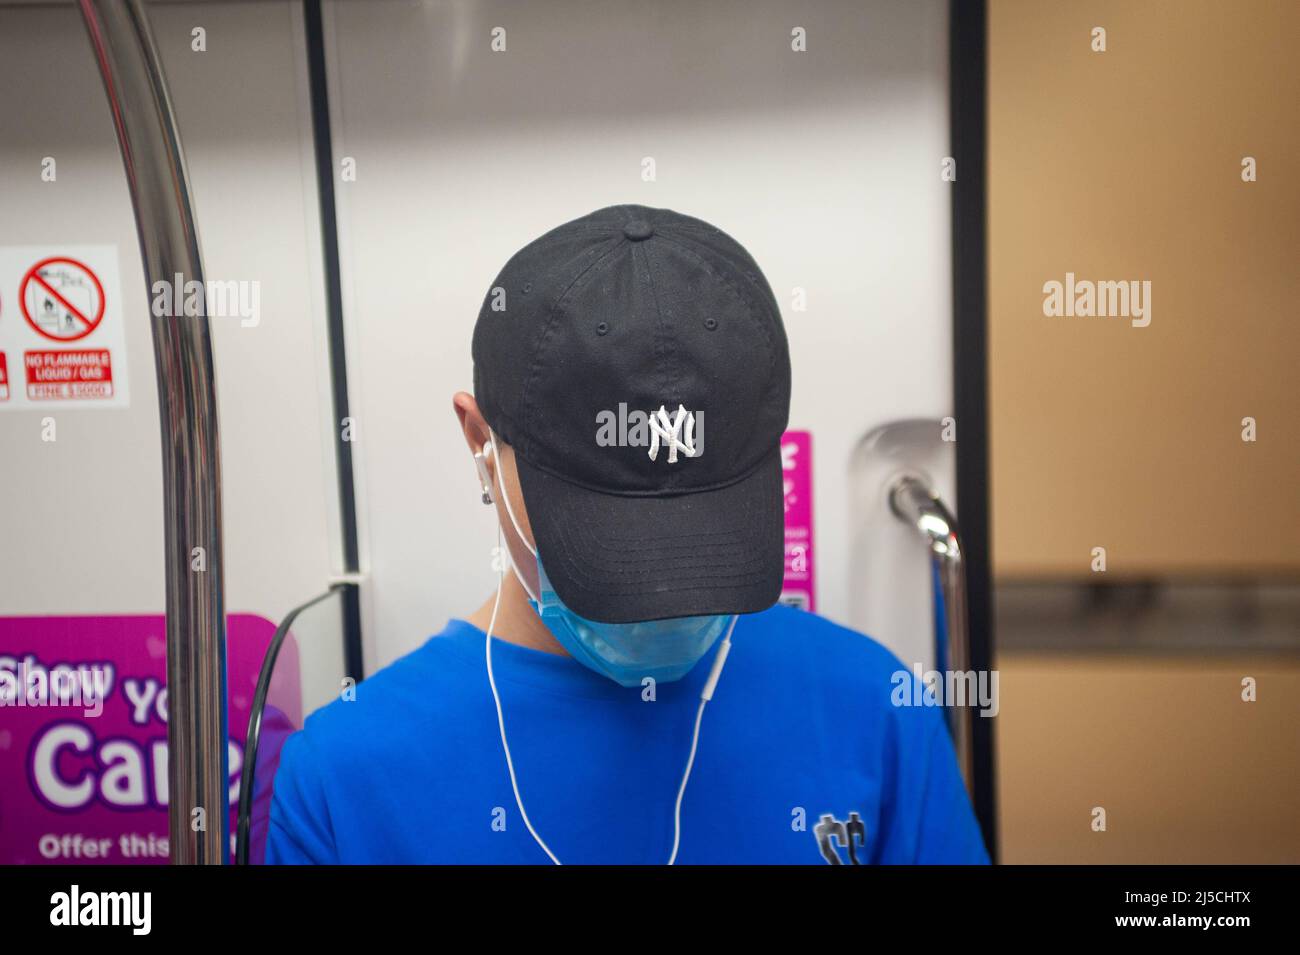 28 février 2020, Singapour, République de Singapour, Asie - Un jeune homme porte un respirateur dans un métro pour se protéger contre la contagion du coronavirus pandémique. Il porte une casquette de baseball avec le logo des New York Yankees. [traduction automatique] Banque D'Images